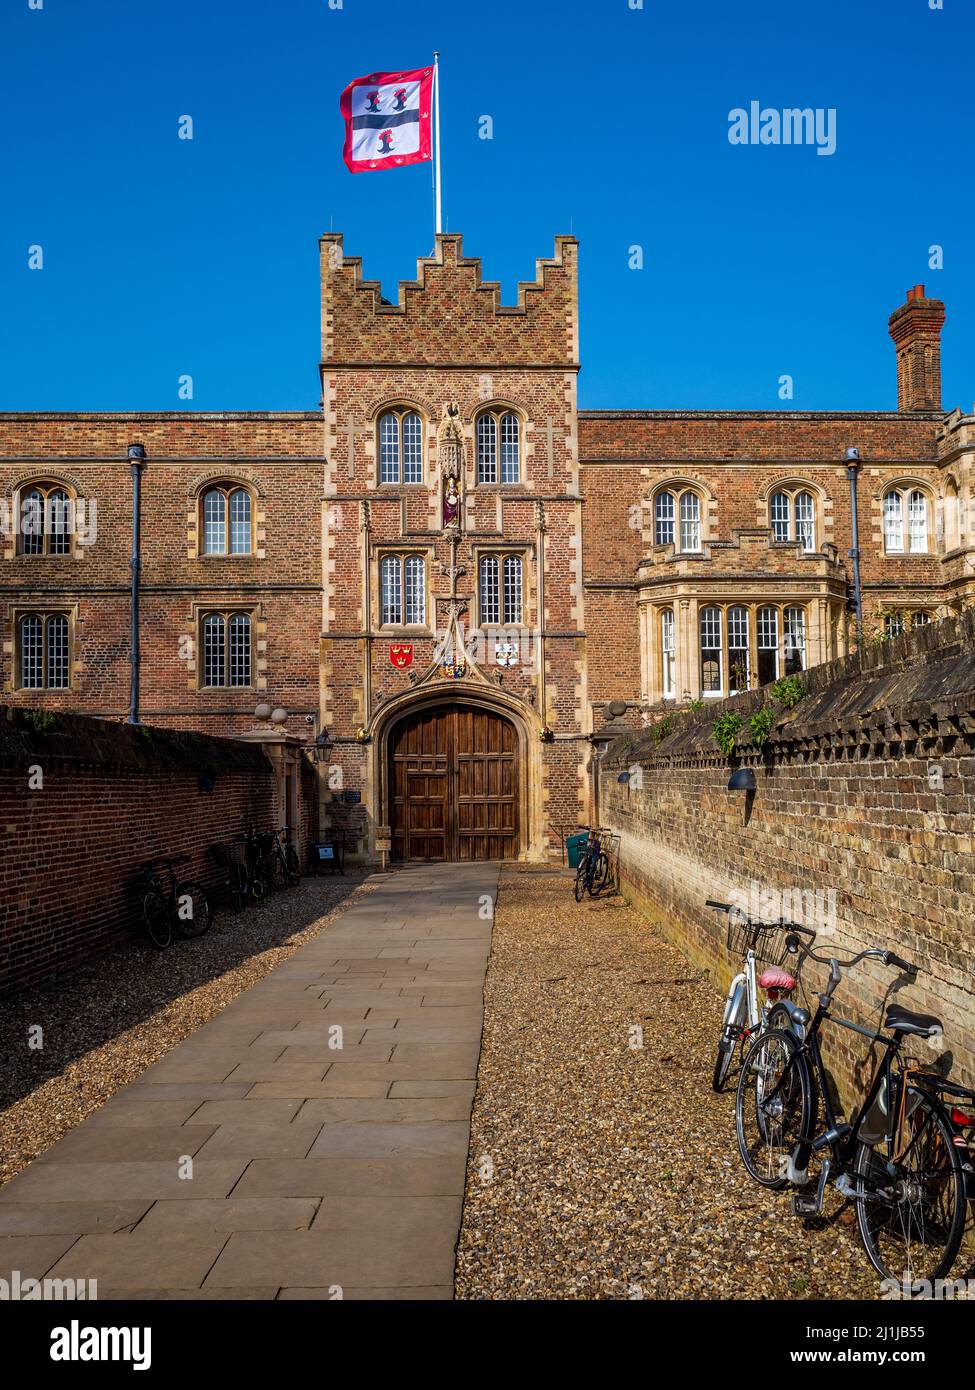 Jesus College Cambridge - passerelle d'entrée de la porte principale, connue sous le nom de cheminée, au Jesus College, qui fait partie de l'Université de Cambridge. Fondée en 1496. Banque D'Images